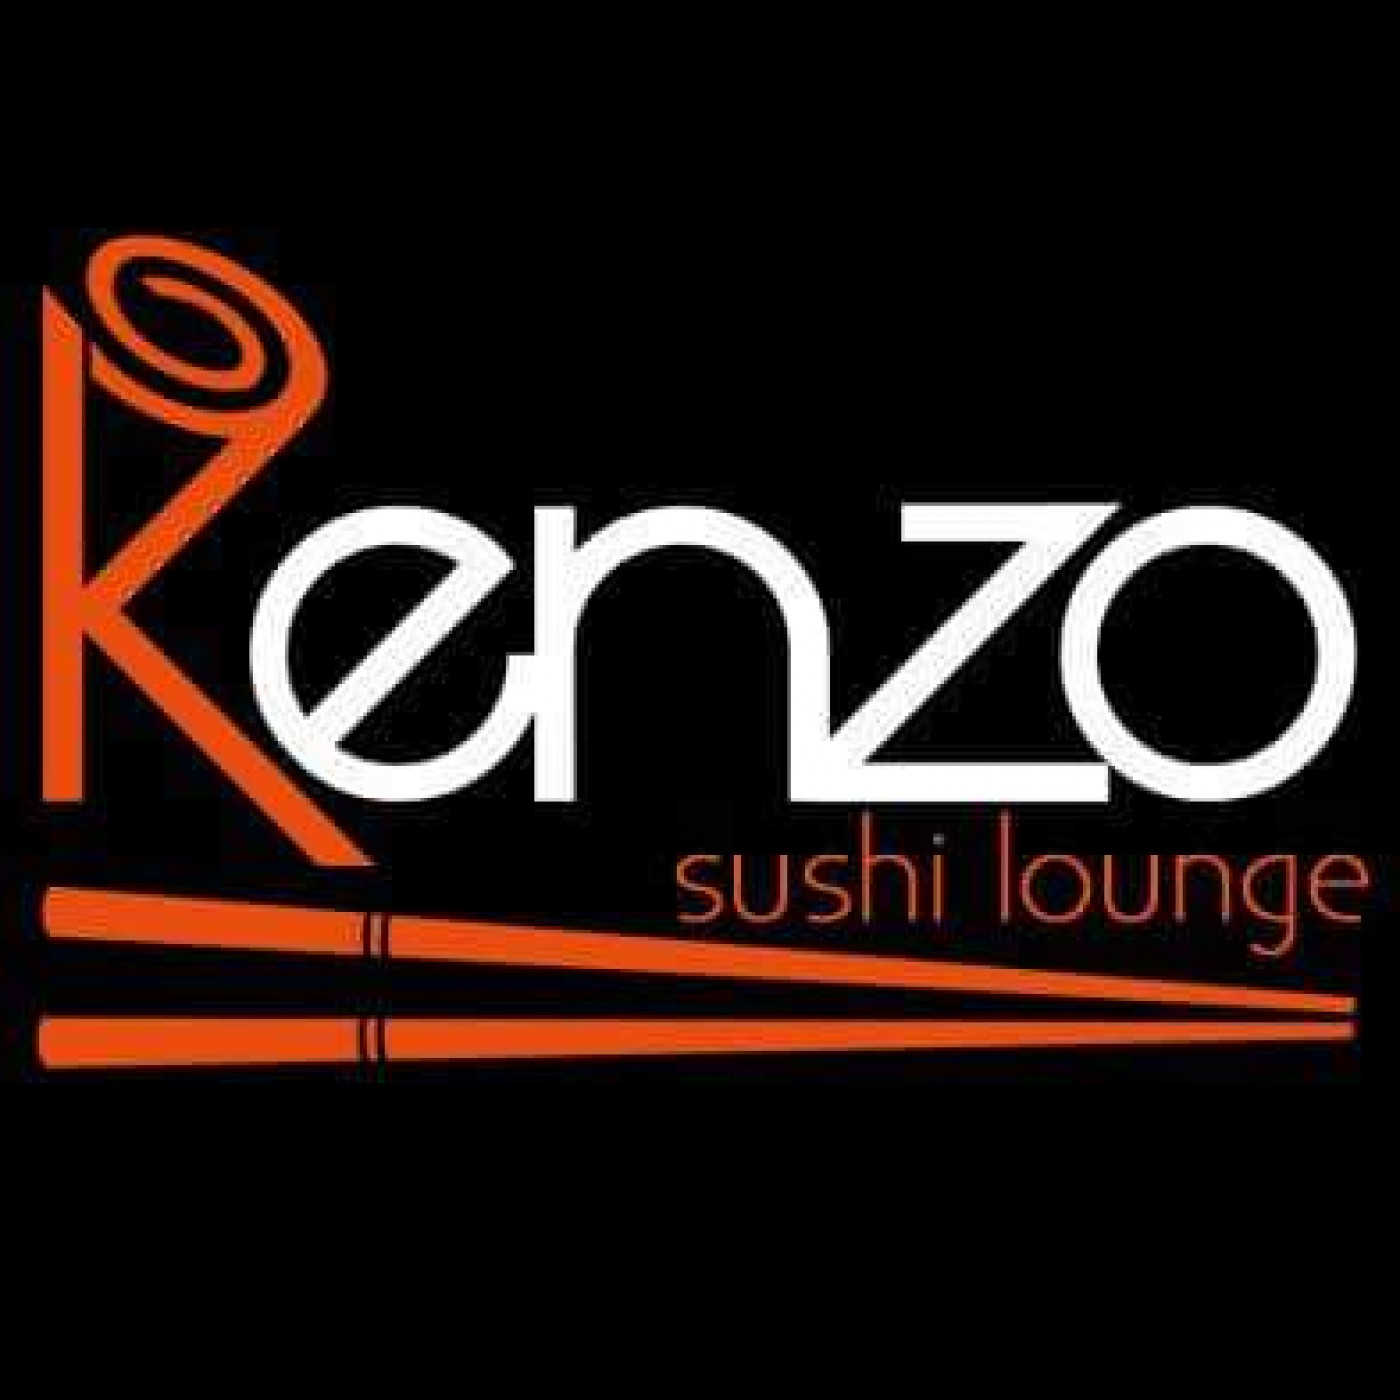 Kenzo Sushi Lounge